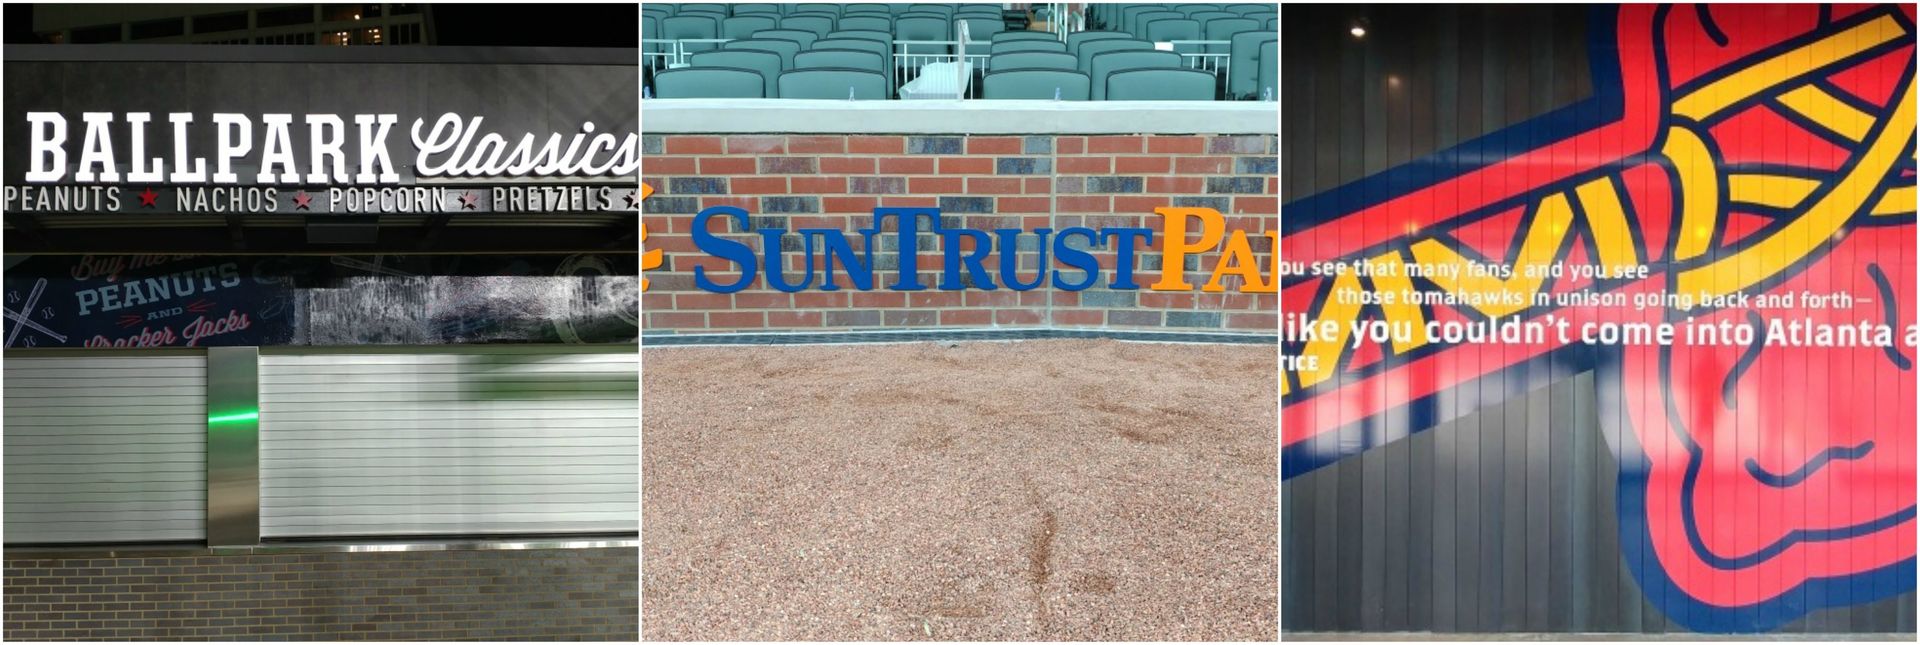 Suntrust Park signage